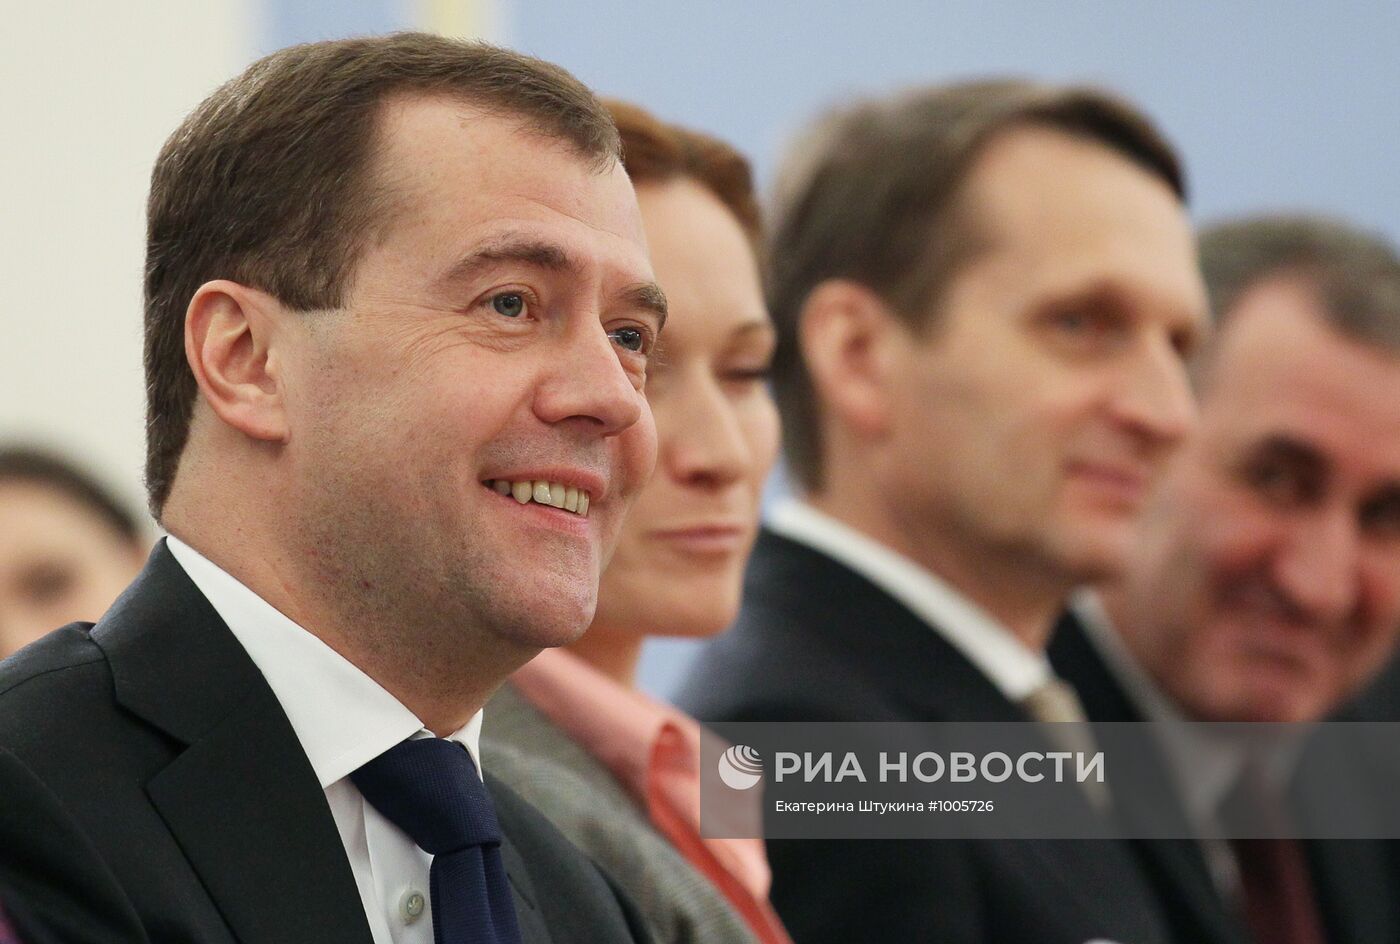 Д.Медведев провел встречу с активом партии "Единая Россия"